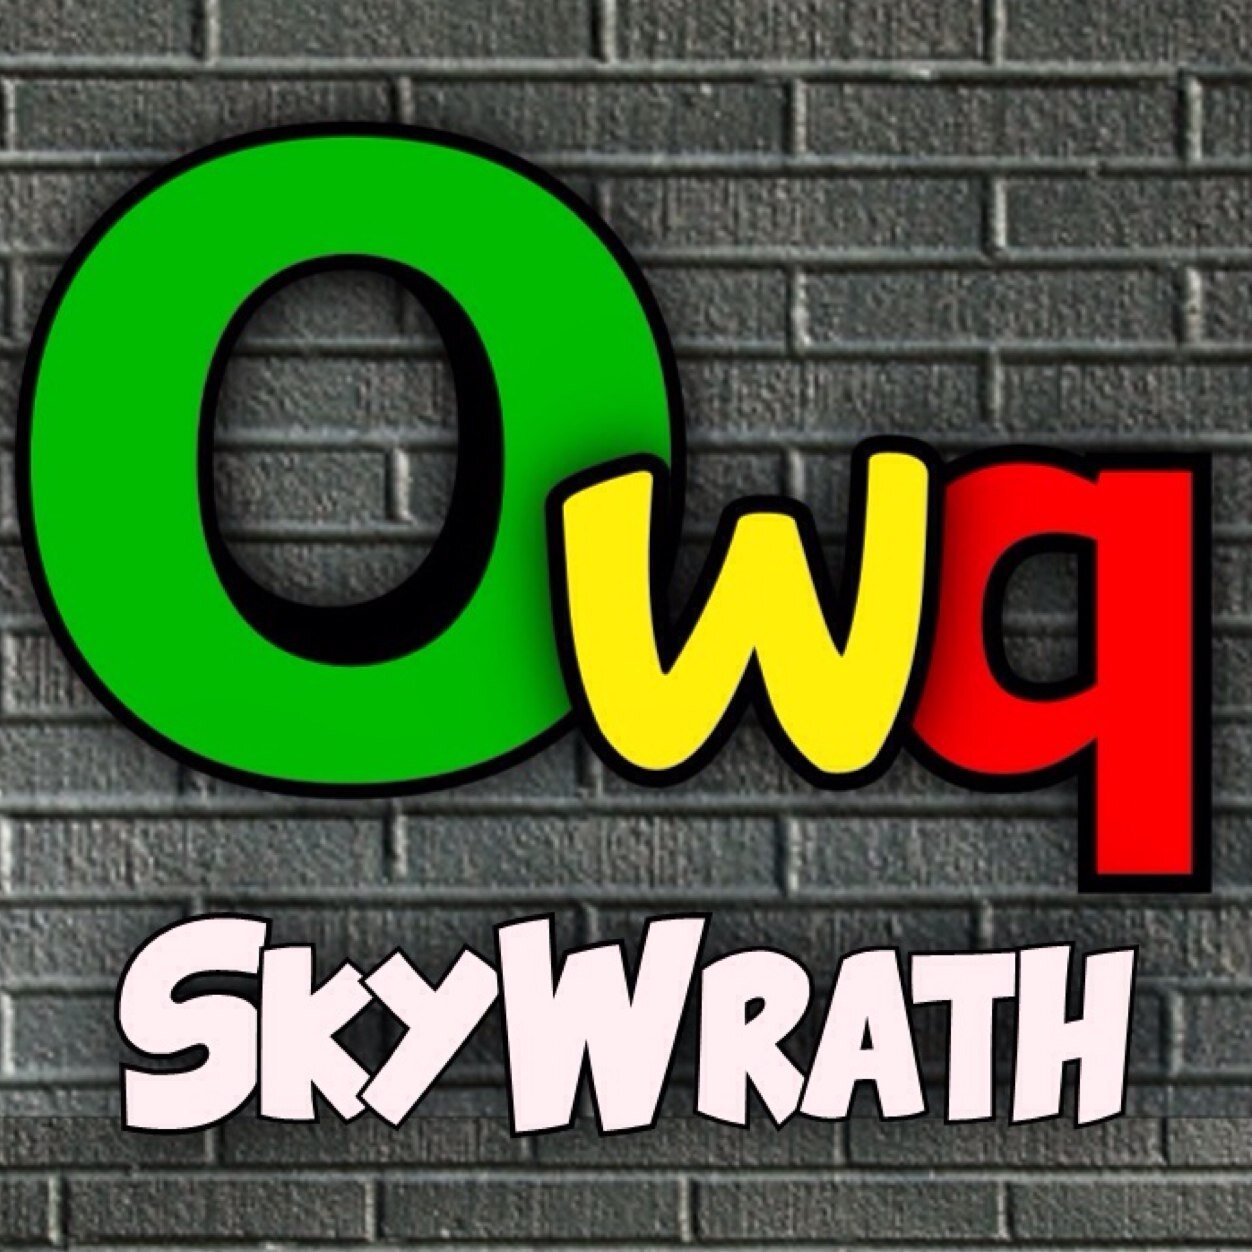 Owqwar™ | Competitive Team PS3 | EU Team | BO2 | Owqwar_SkyWrath |Qualquer equipa que haja com este nome é FAKE!